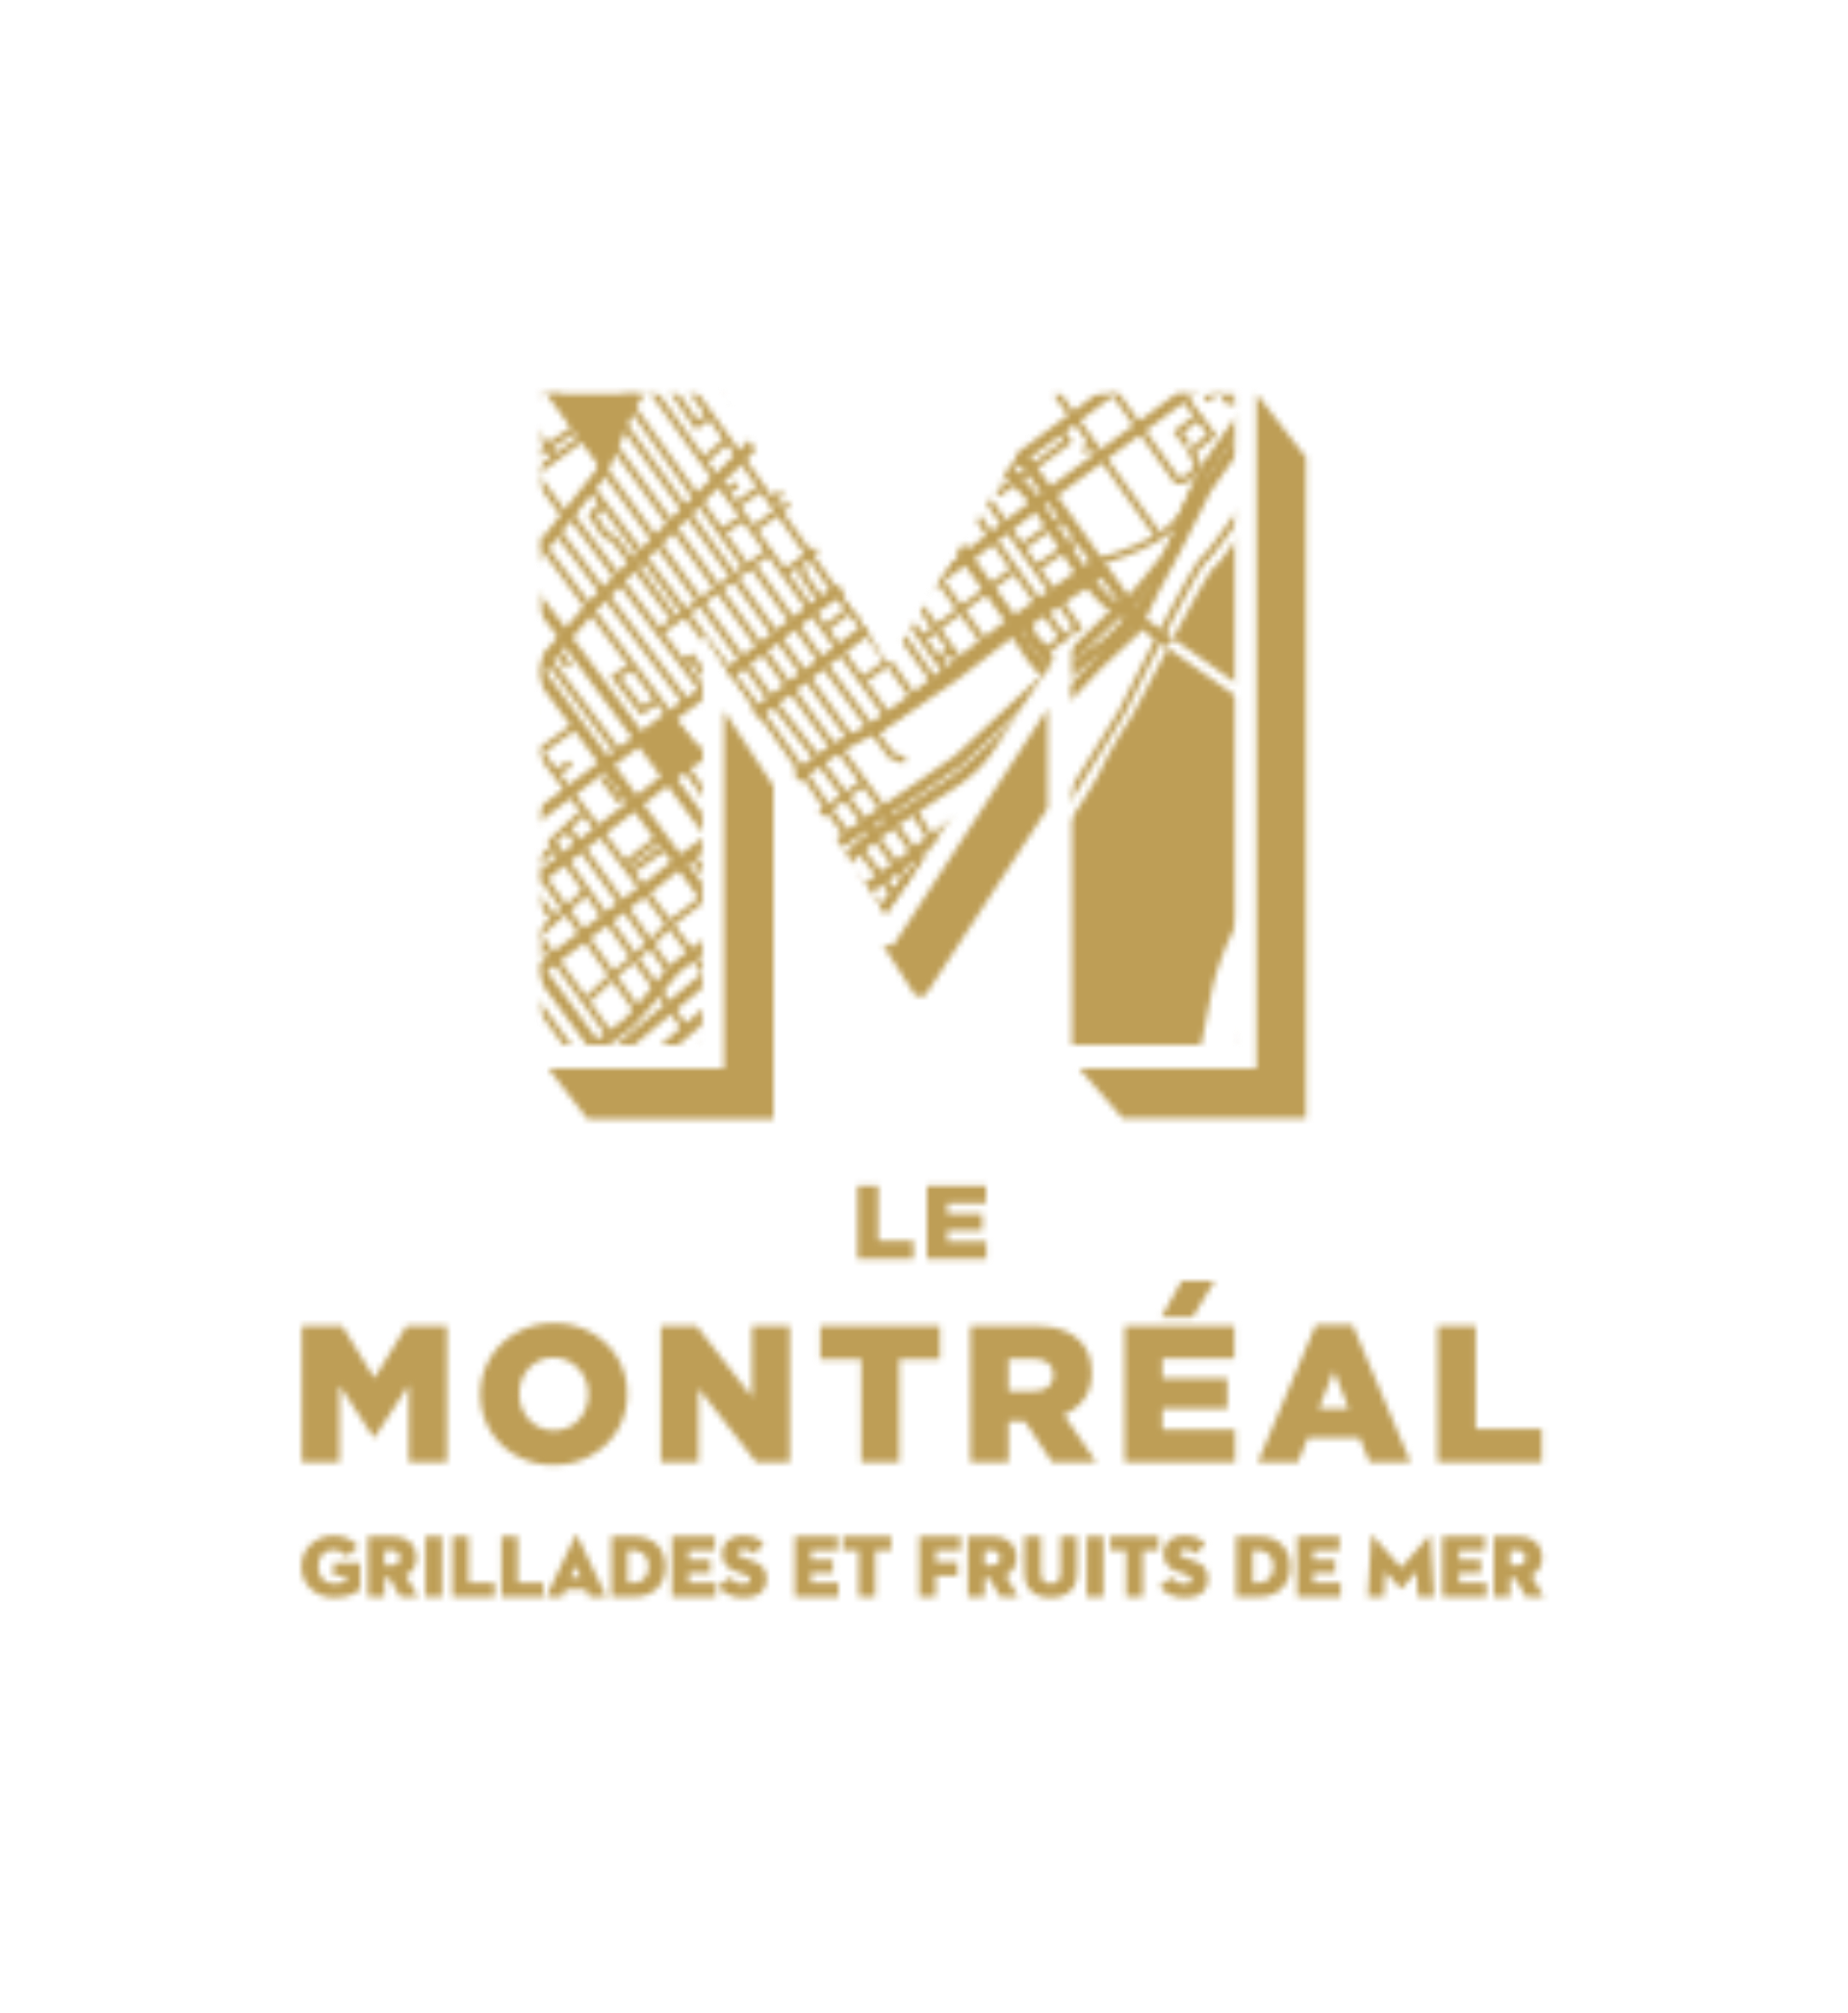 Le Montréal